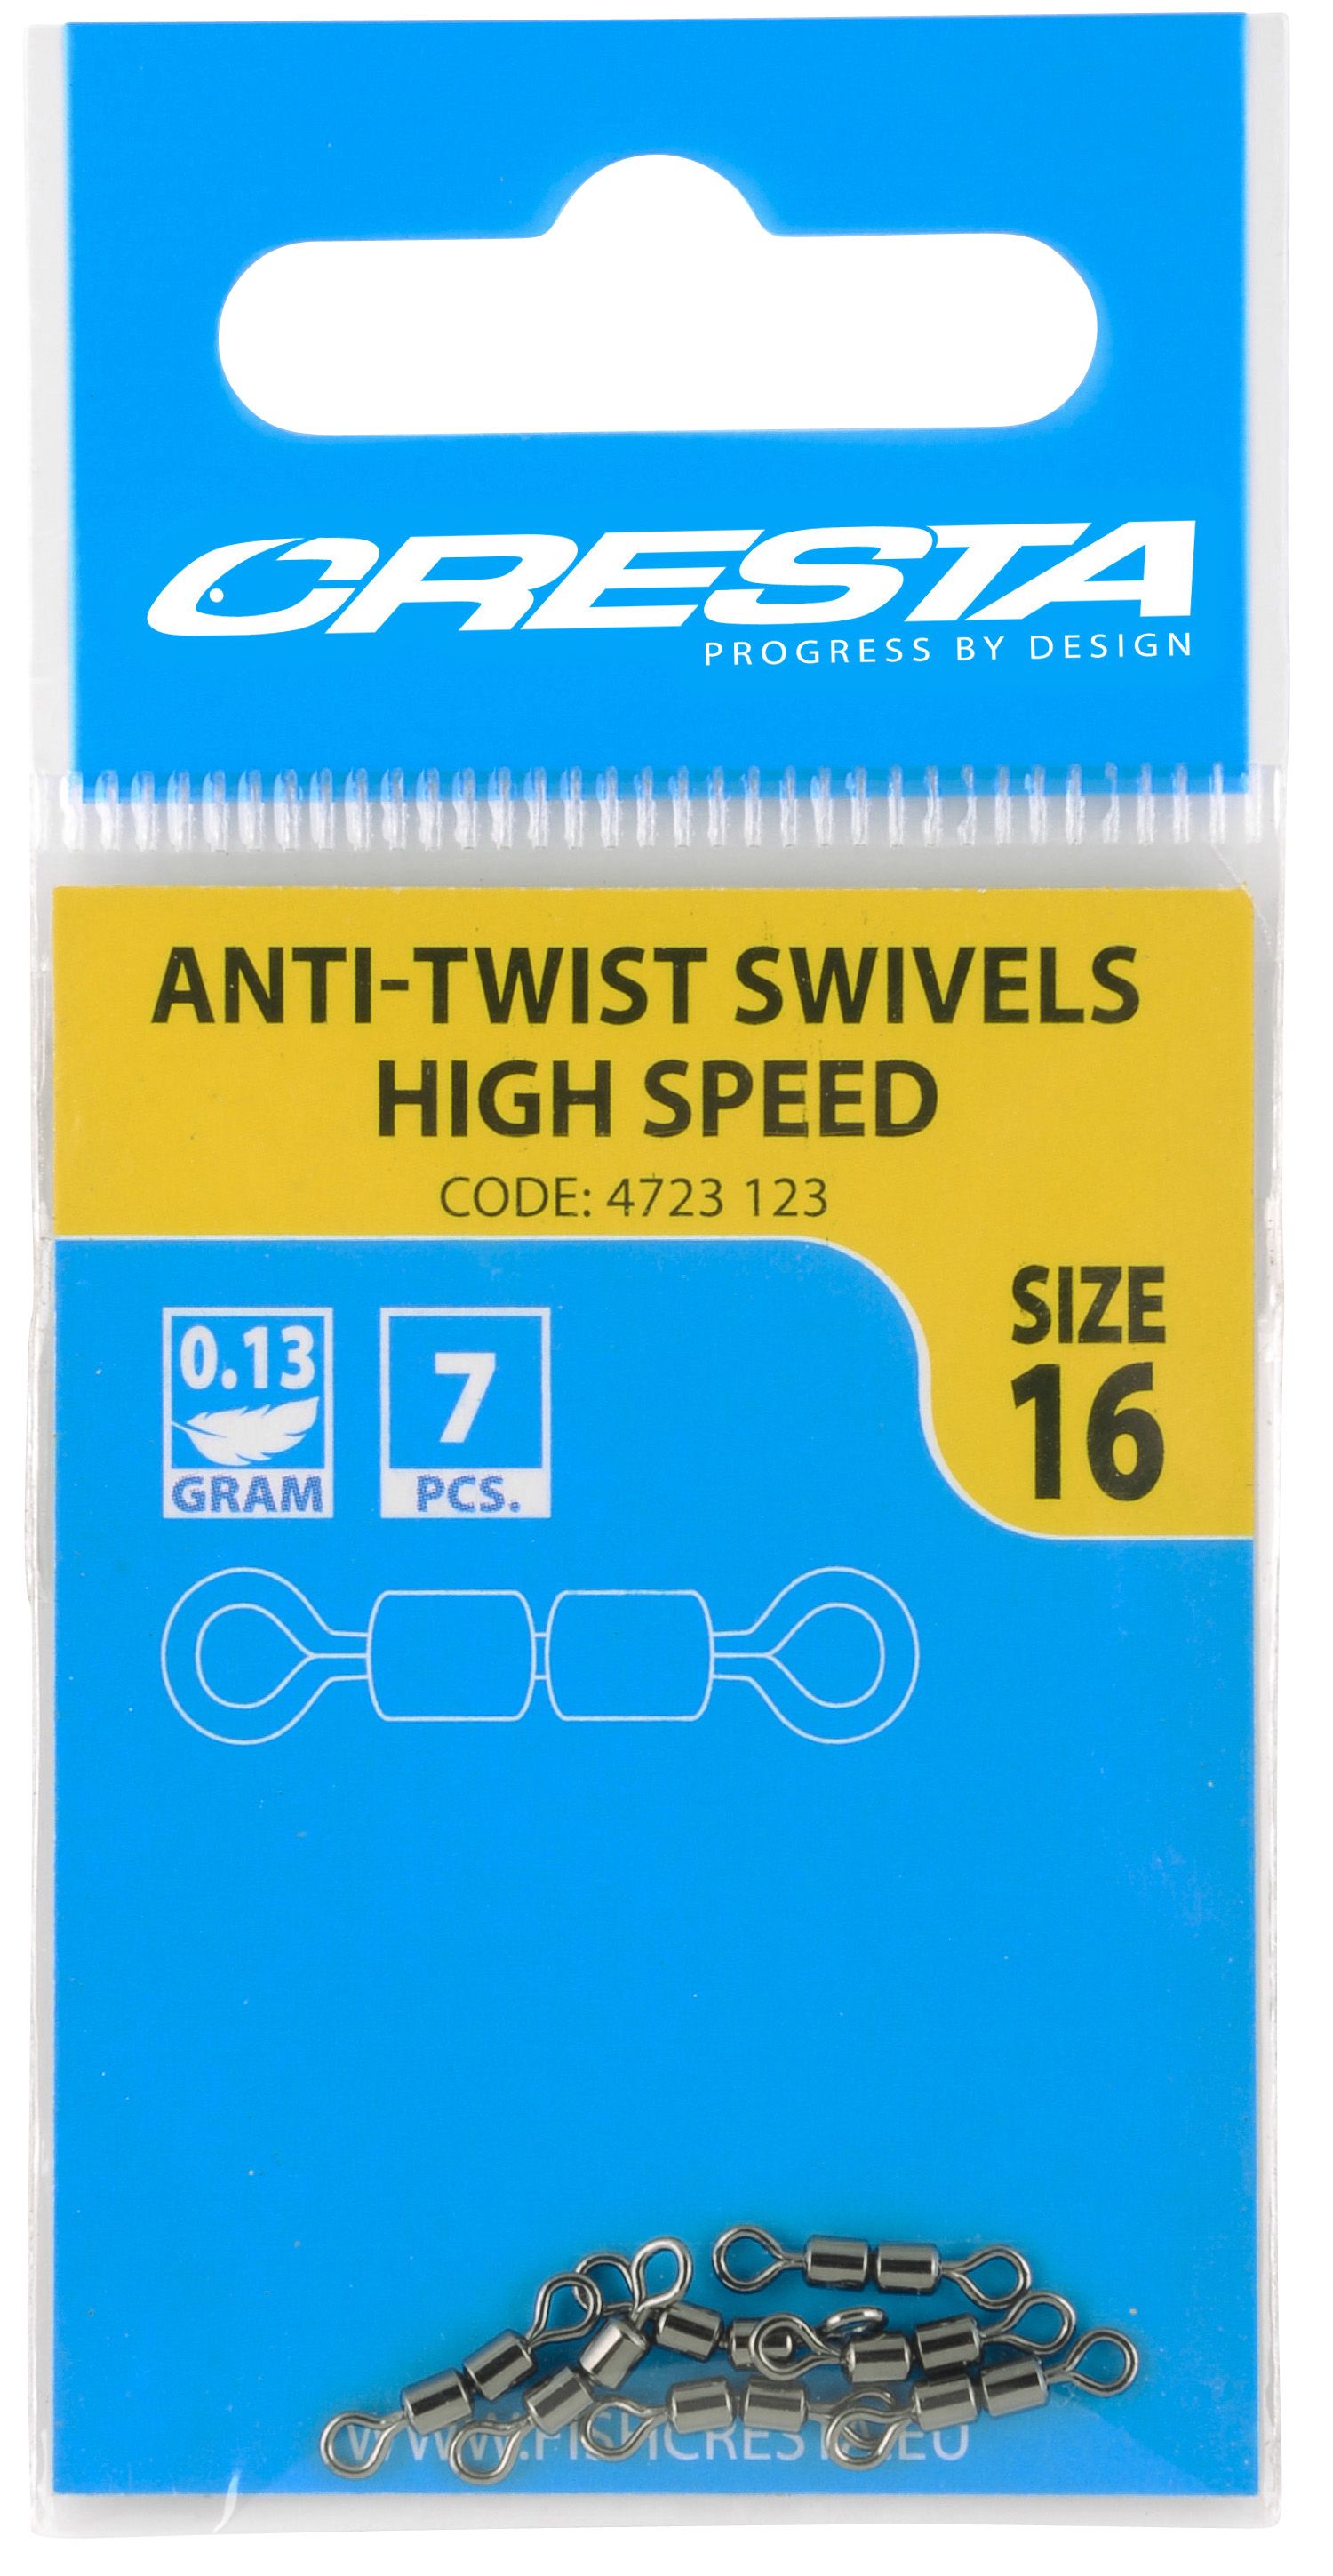 Cresta Anti Twist High Speed Sz. 18 Qty. 7